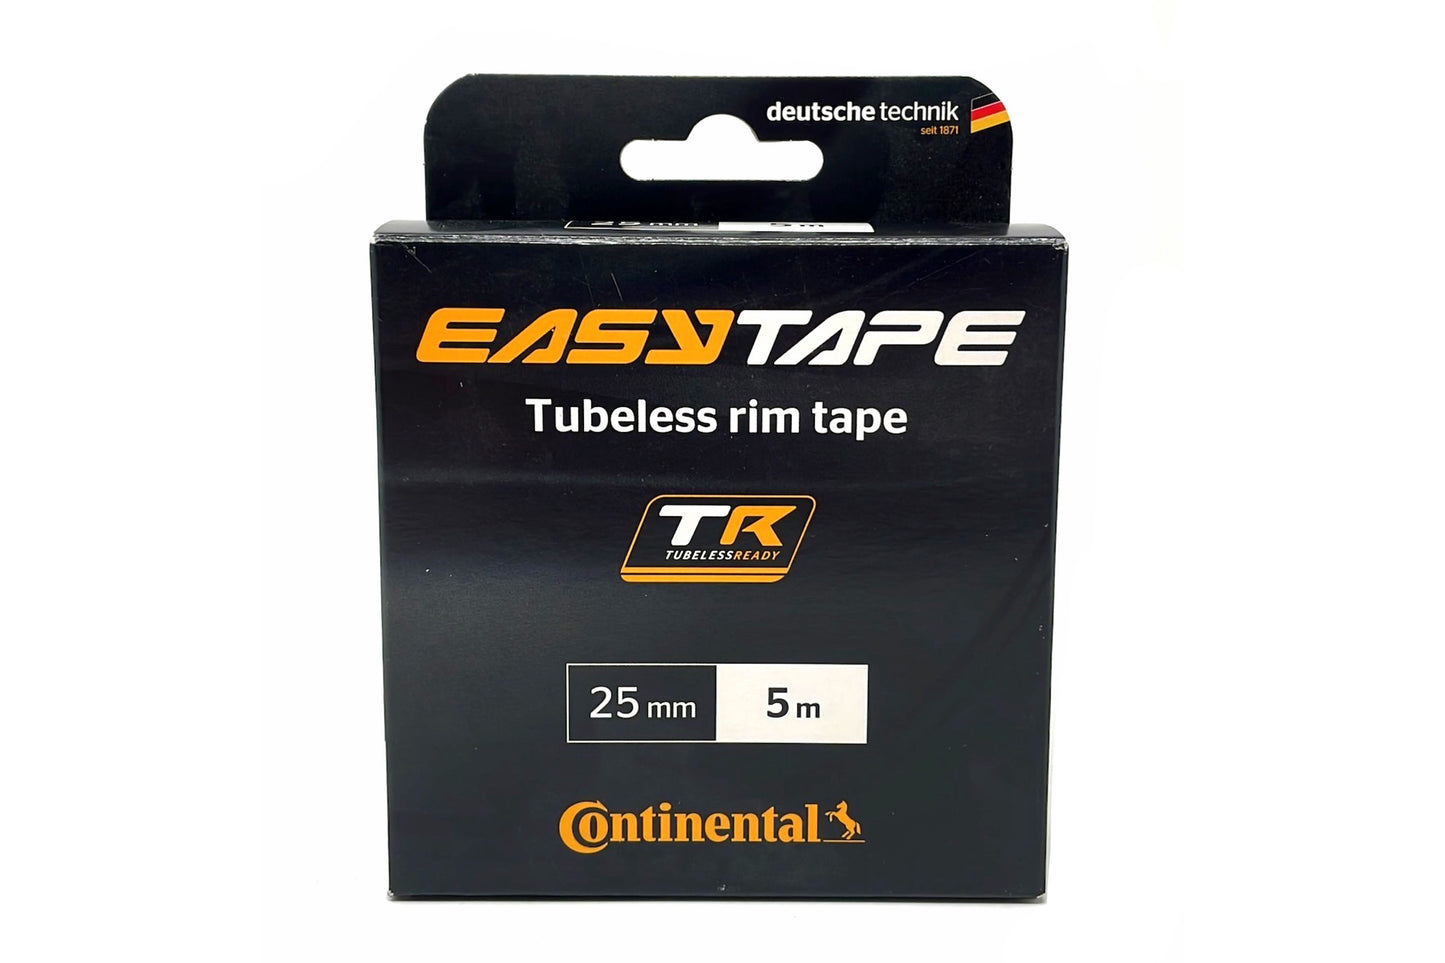 Tubeless rim tape 25mm/5m